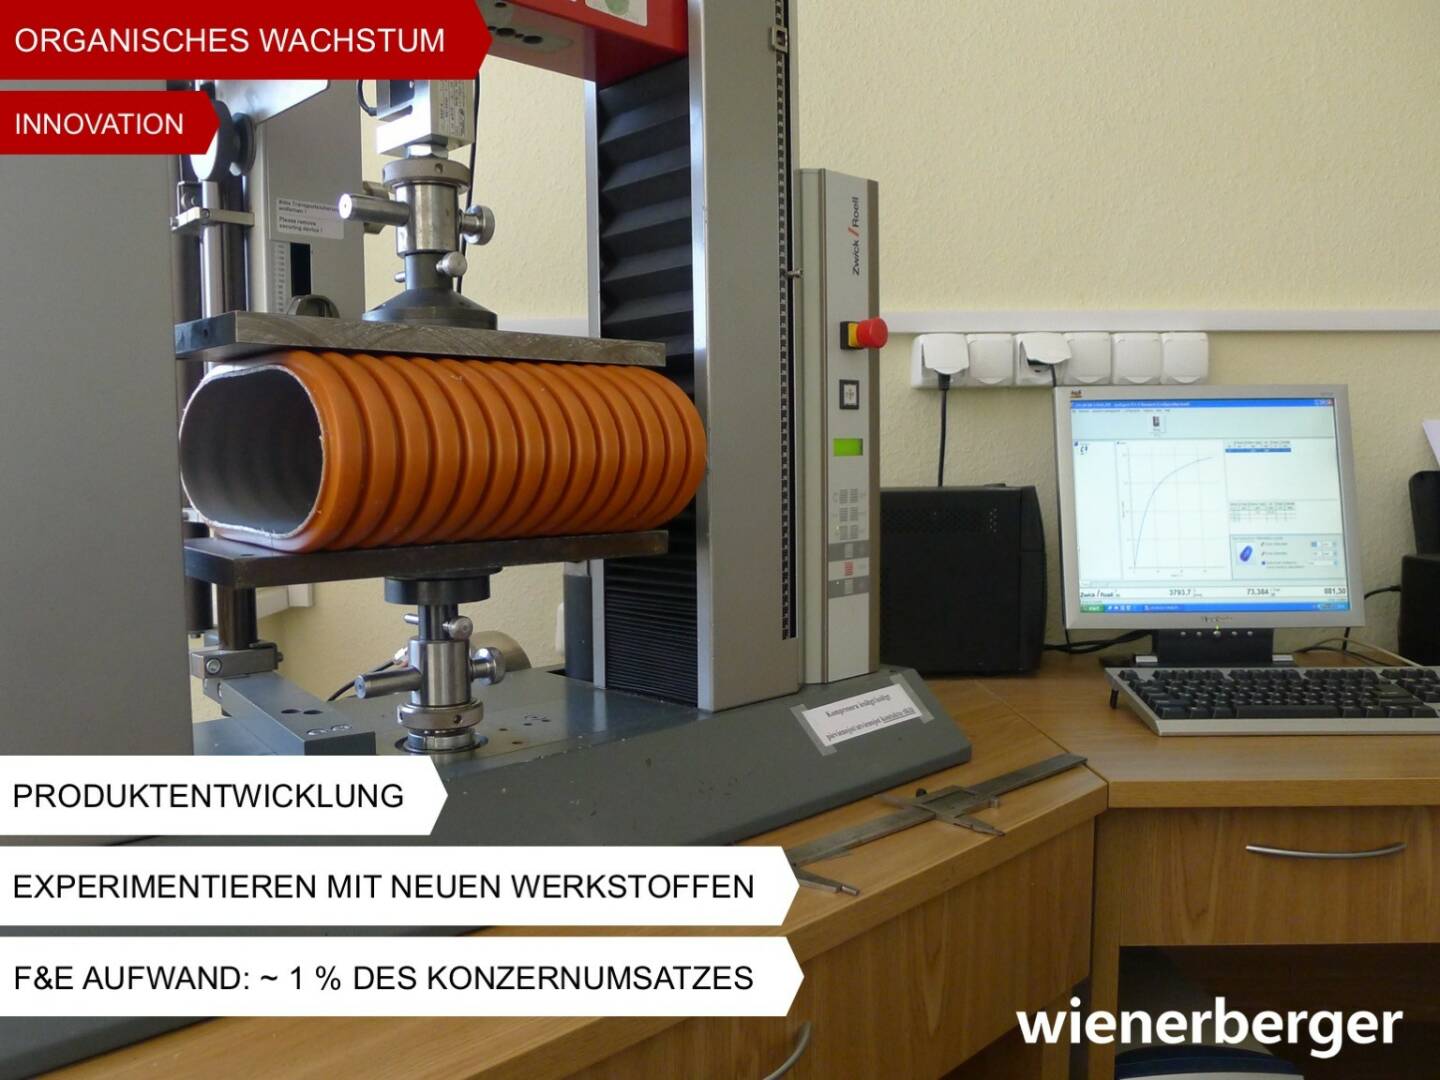 Wienerberger - Innovation